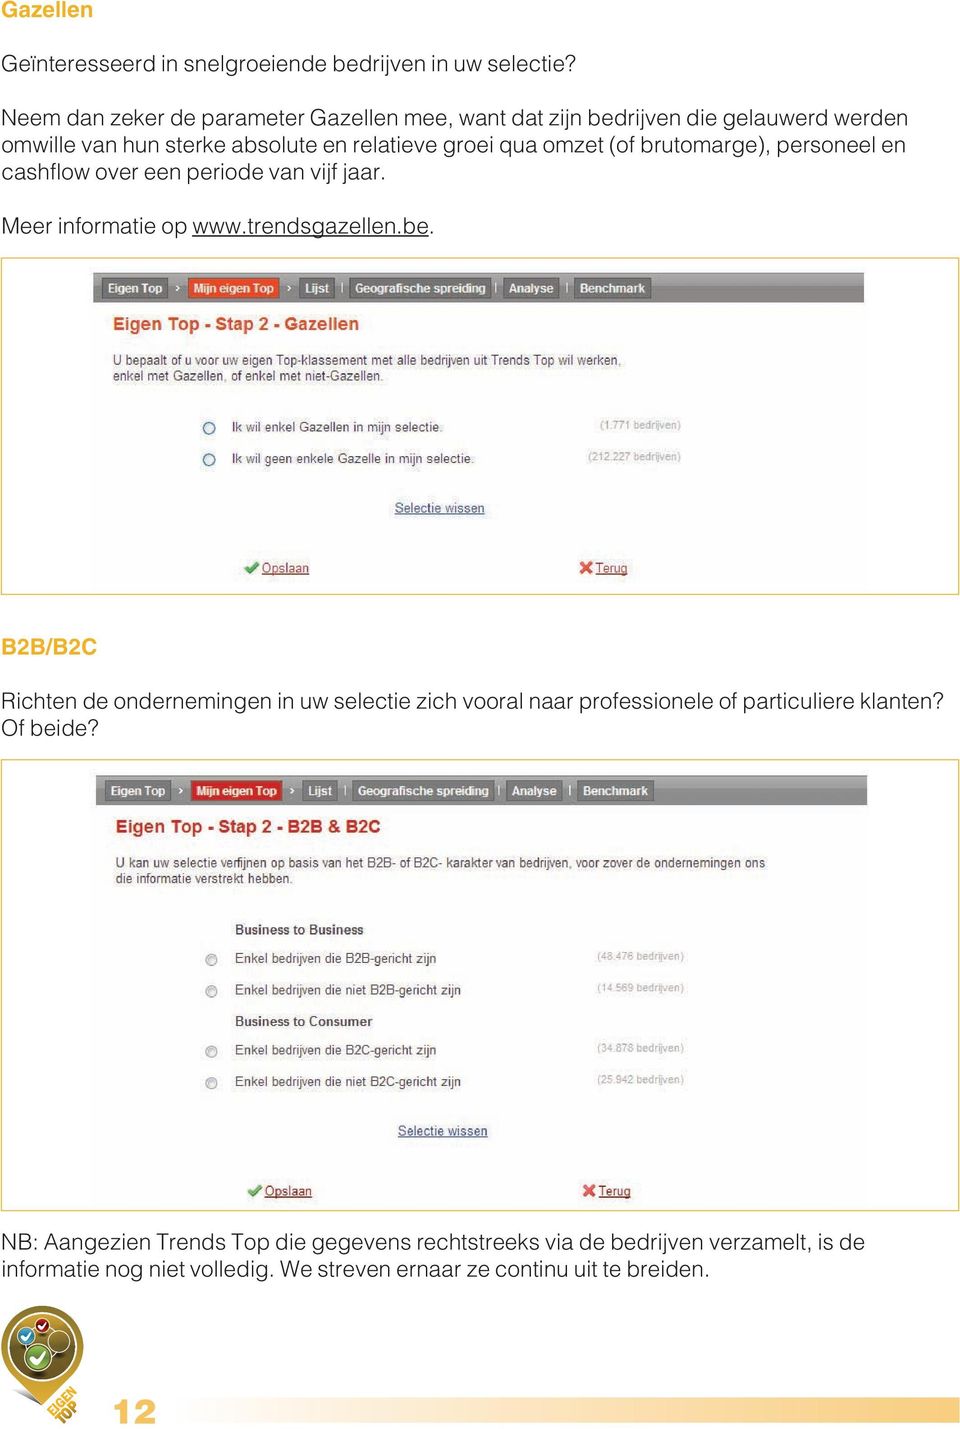 (of brutomarge), personeel en cashflow over een periode van vijf jaar. Meer informatie op www.trendsgazellen.be.